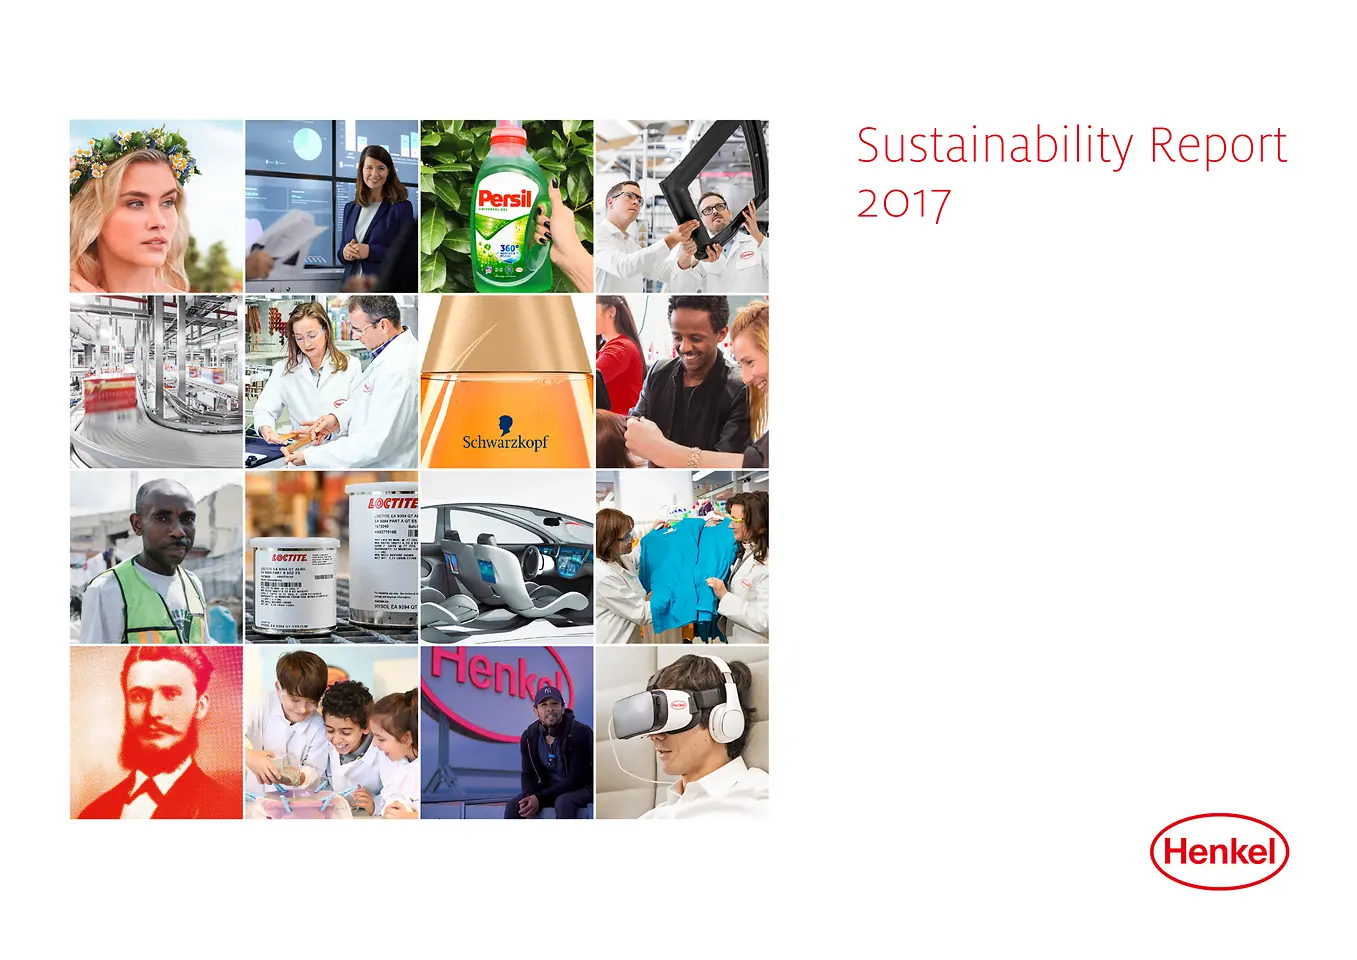 Kapak: 2017 Sürdürülebilir Gelişme Raporu